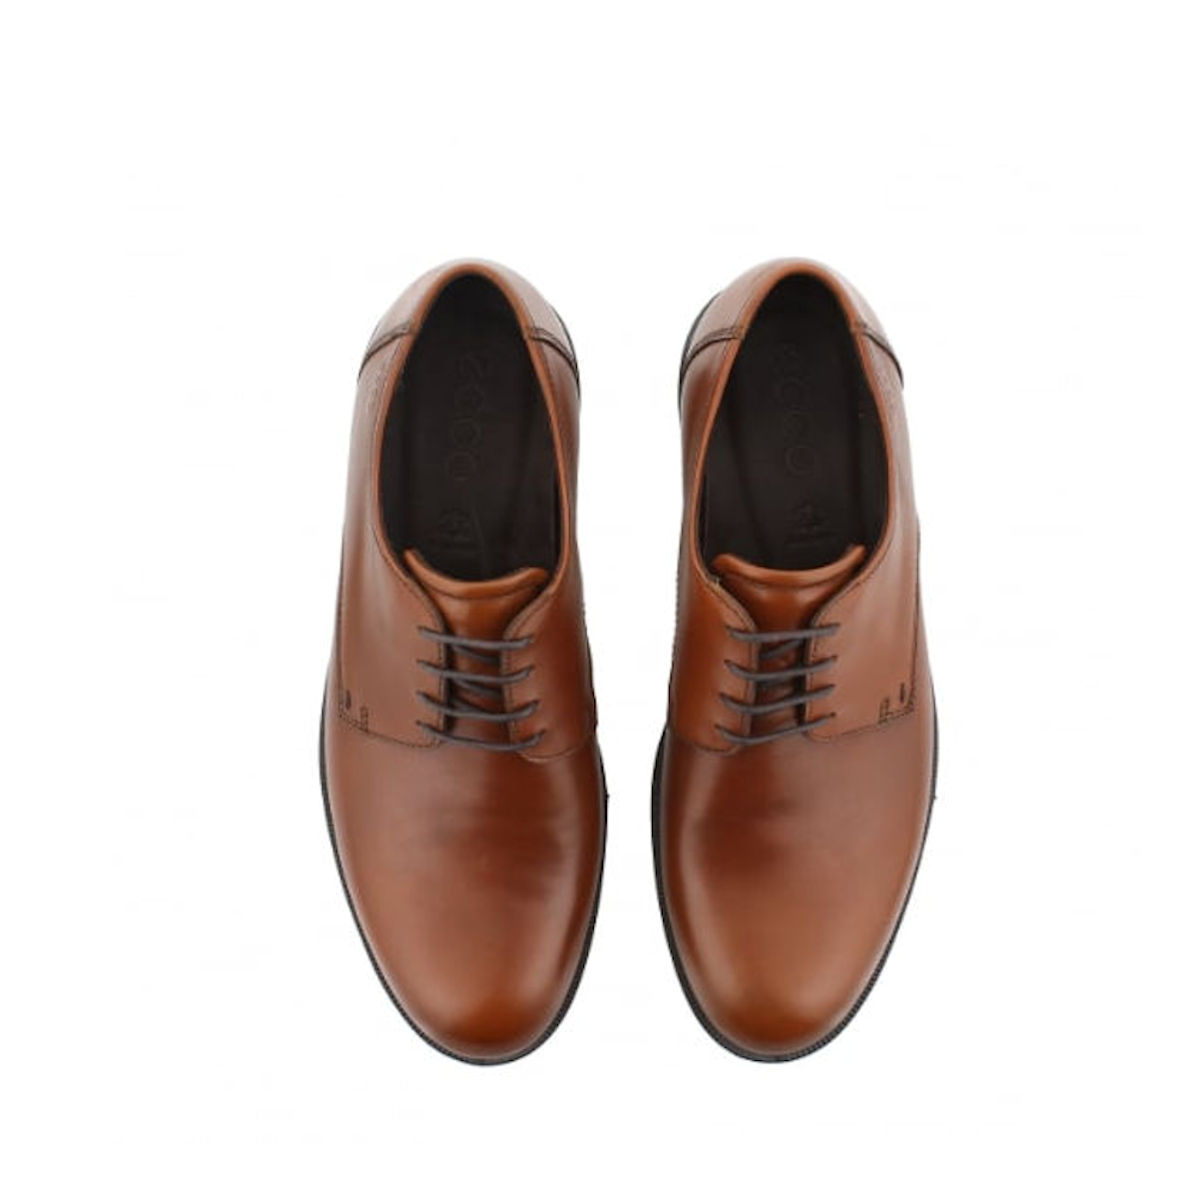 ECCO Harold - Mens Cognac Brown Leather Derby Shoe